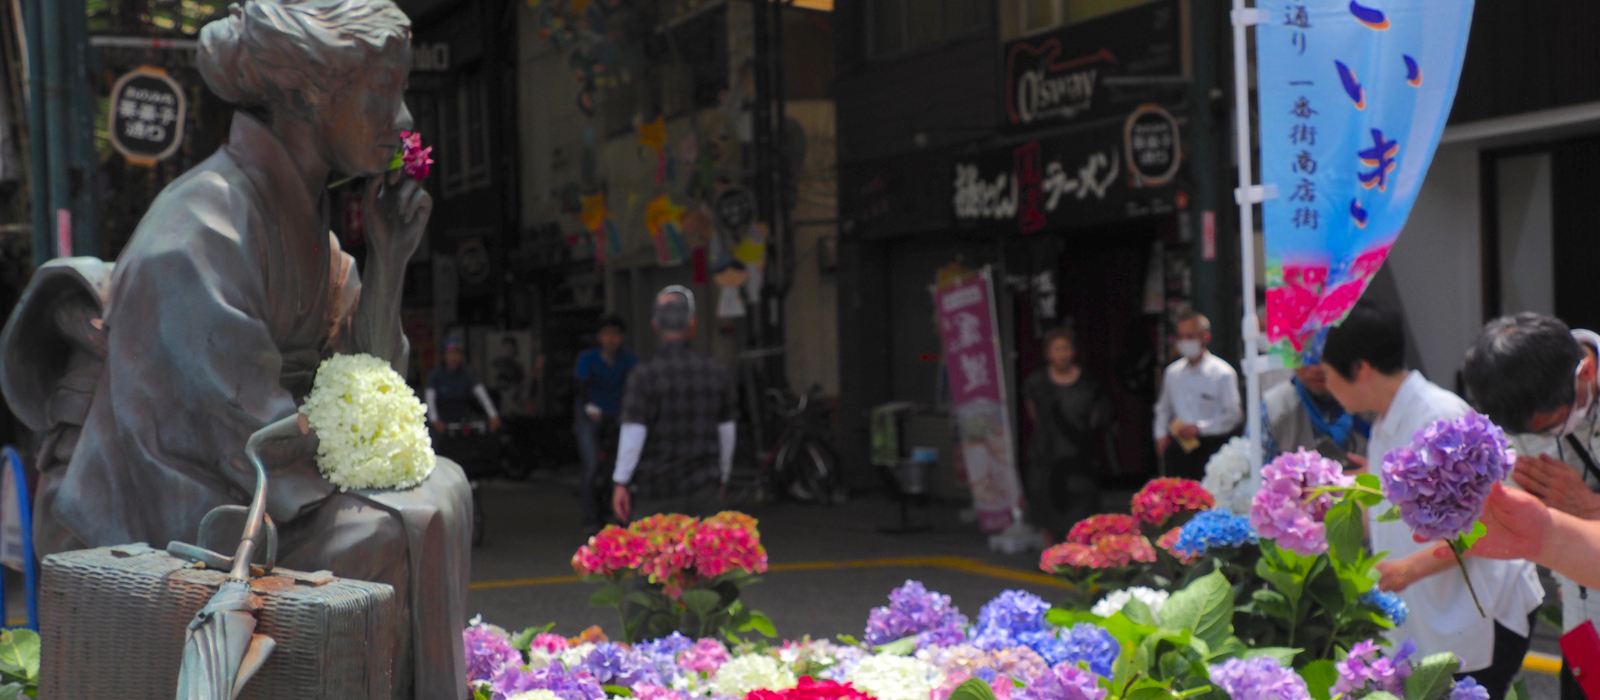 尾道ゆかりの女流作家、 林芙美子を偲ぶ「あじさいき」。6月23日にあじさいの献花をはじめ、様々な催しがあります。